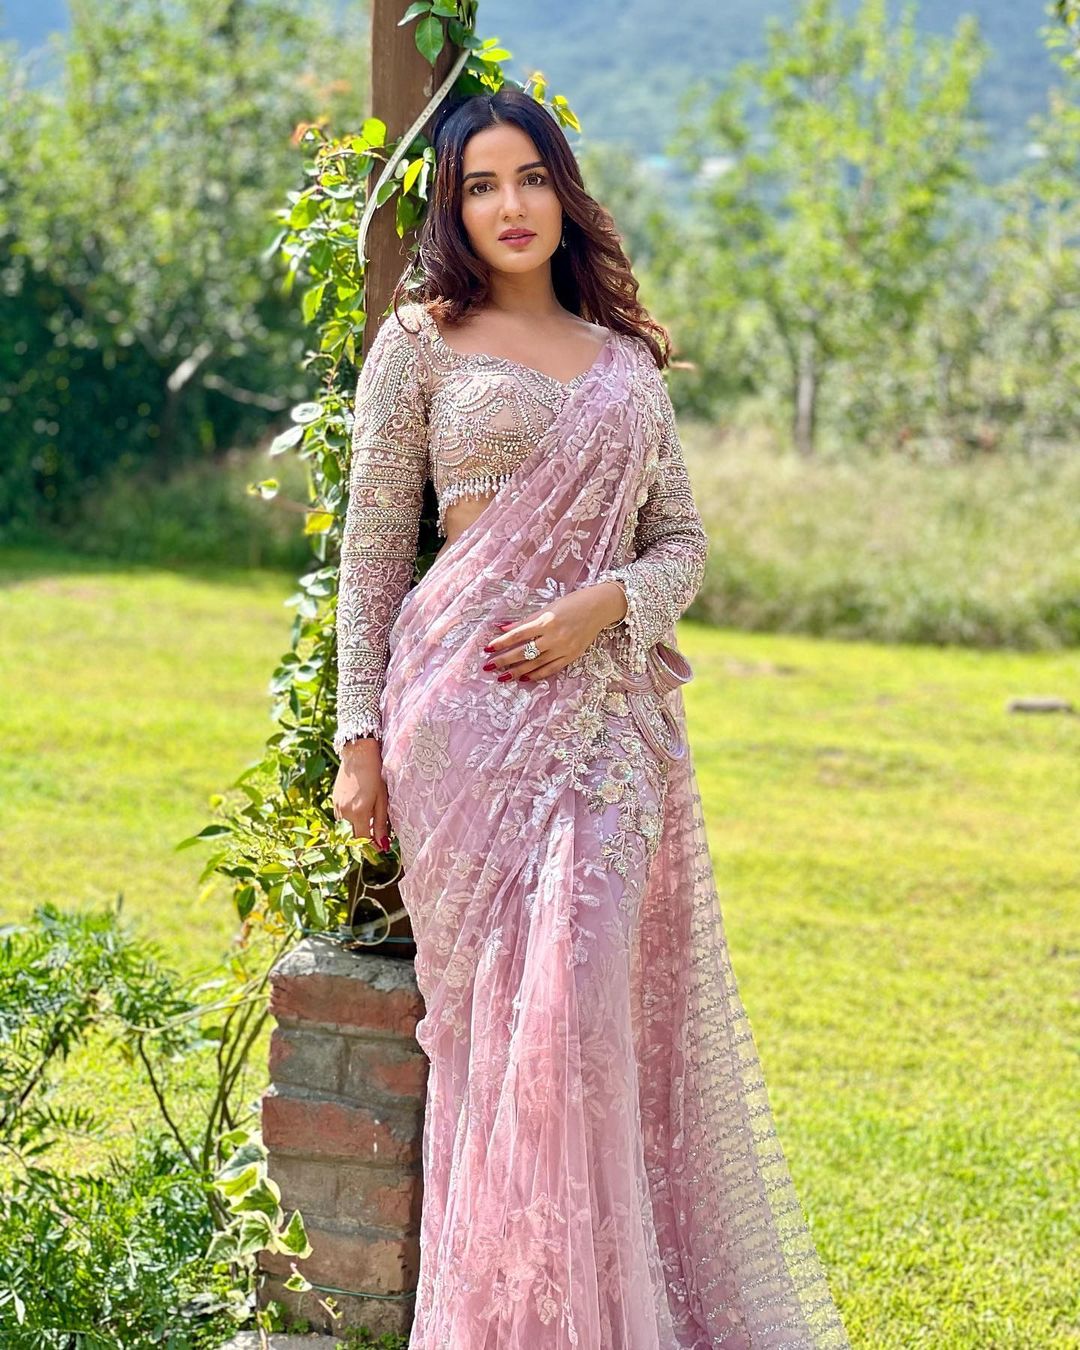 Jasmin Bhasin looks stunning in the pastel pink saree.